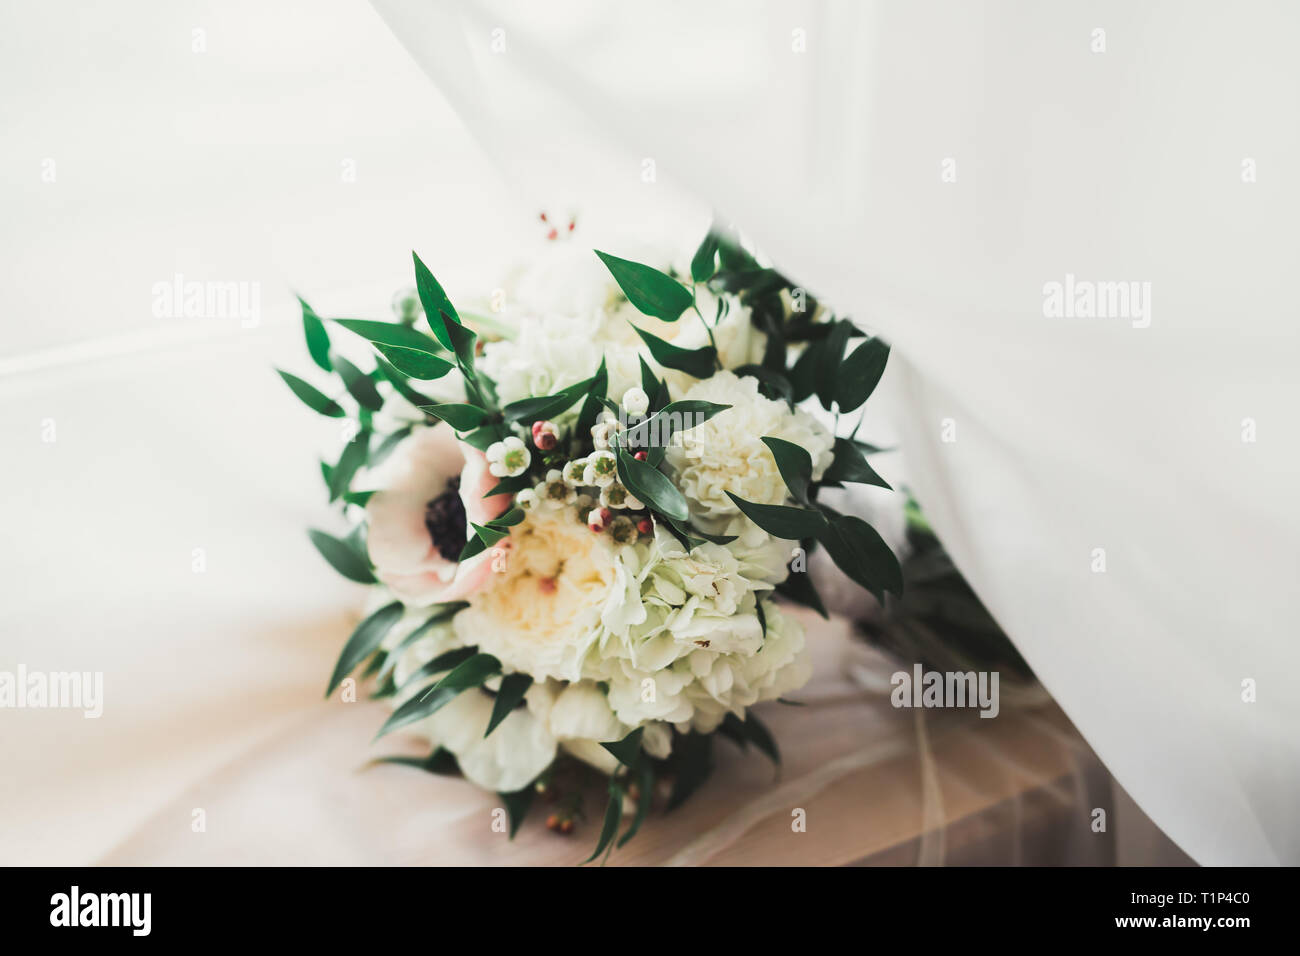 Beau bouquet de mariage de différentes fleurs, roses Banque D'Images